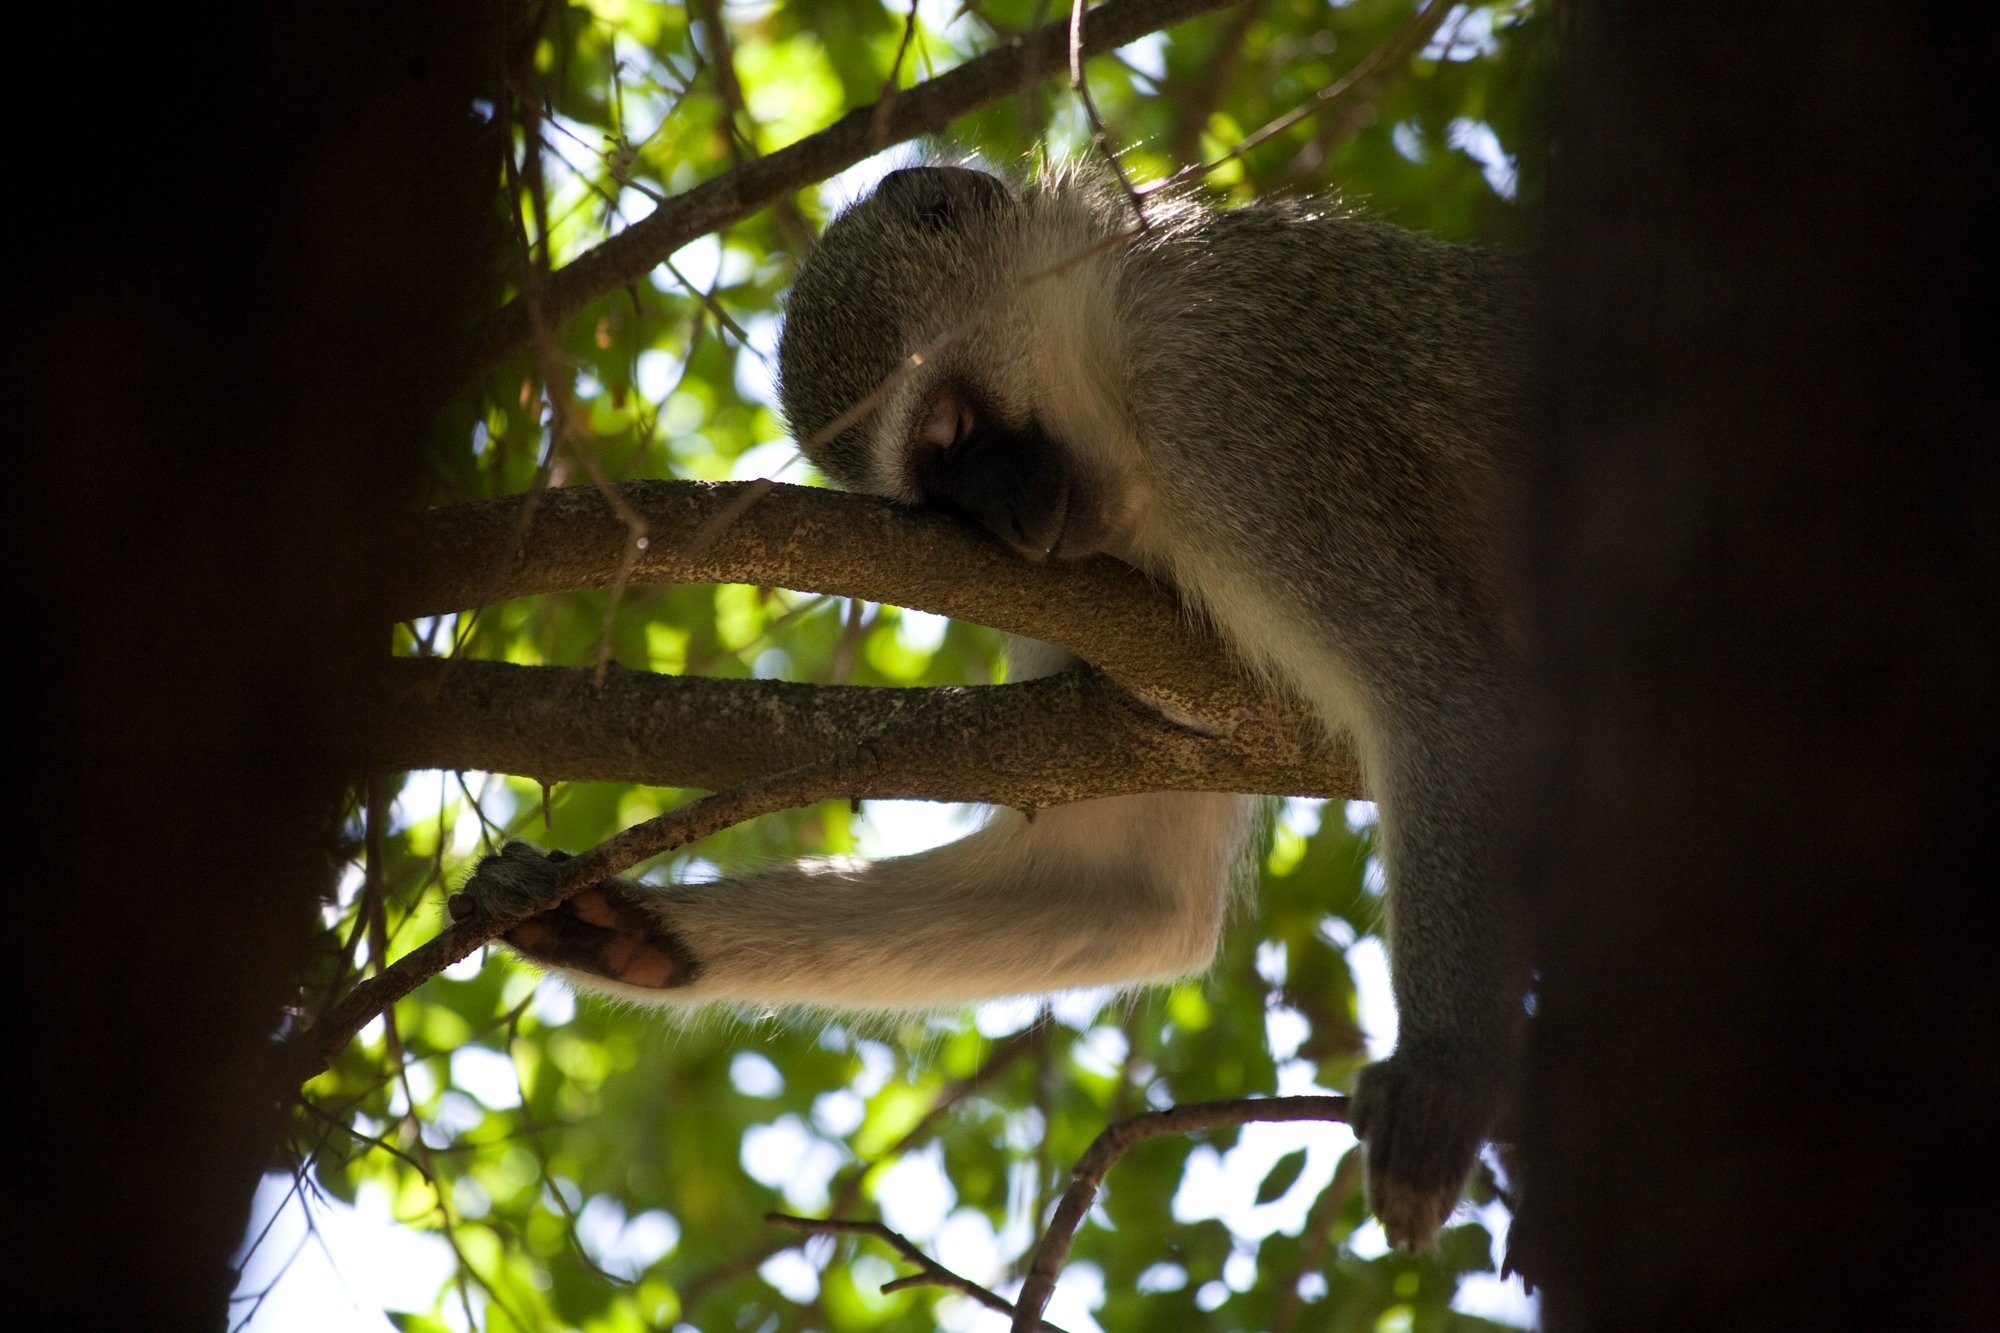 Mono durmiendo en la foto del árbol